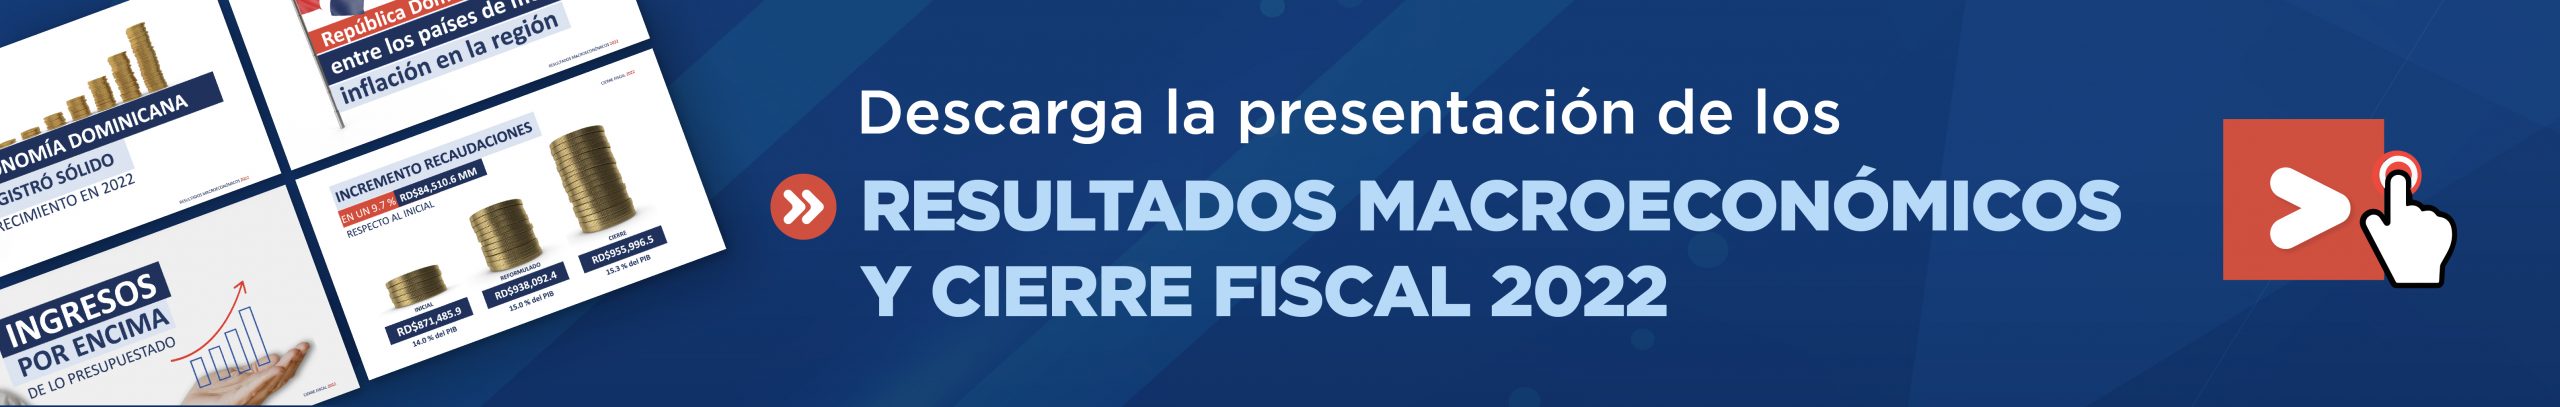 banner descarga la presentación de los resultados macroecónomicos